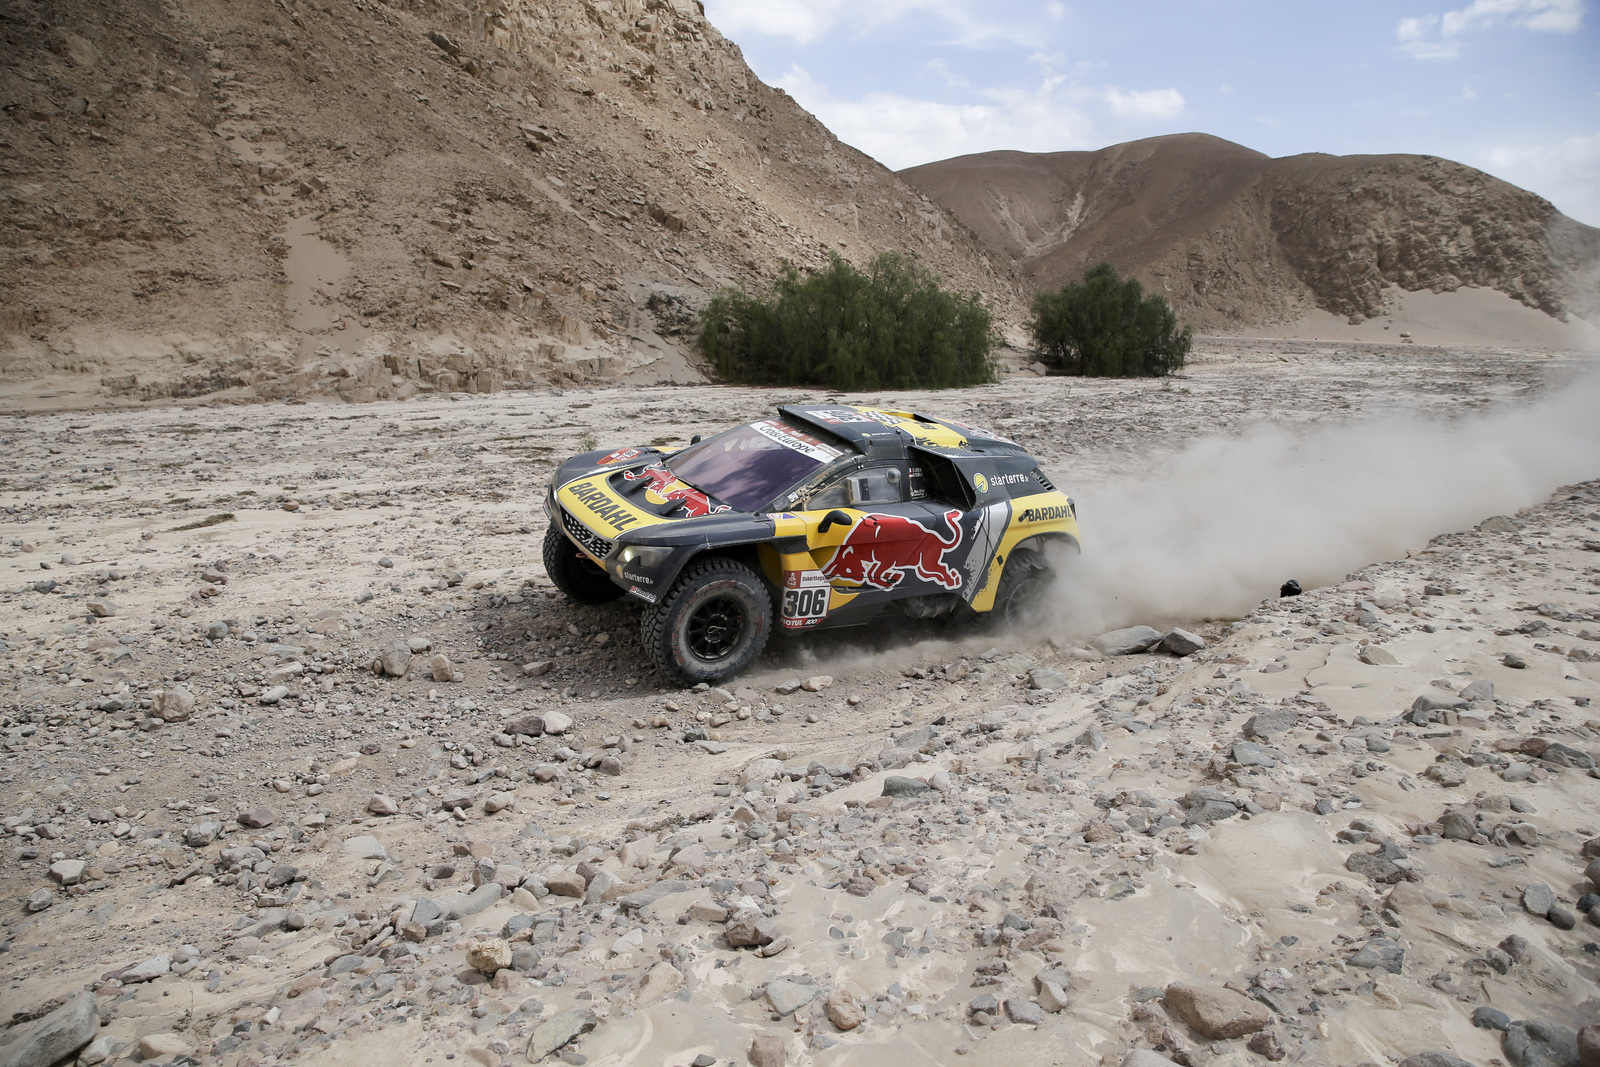 Sebastian Loeb llegó en primer lugar en la quinta etapa del Rally Dakar, en segundo lugar, a diez minutos llegó el líder Nasser Al-Attiyah.